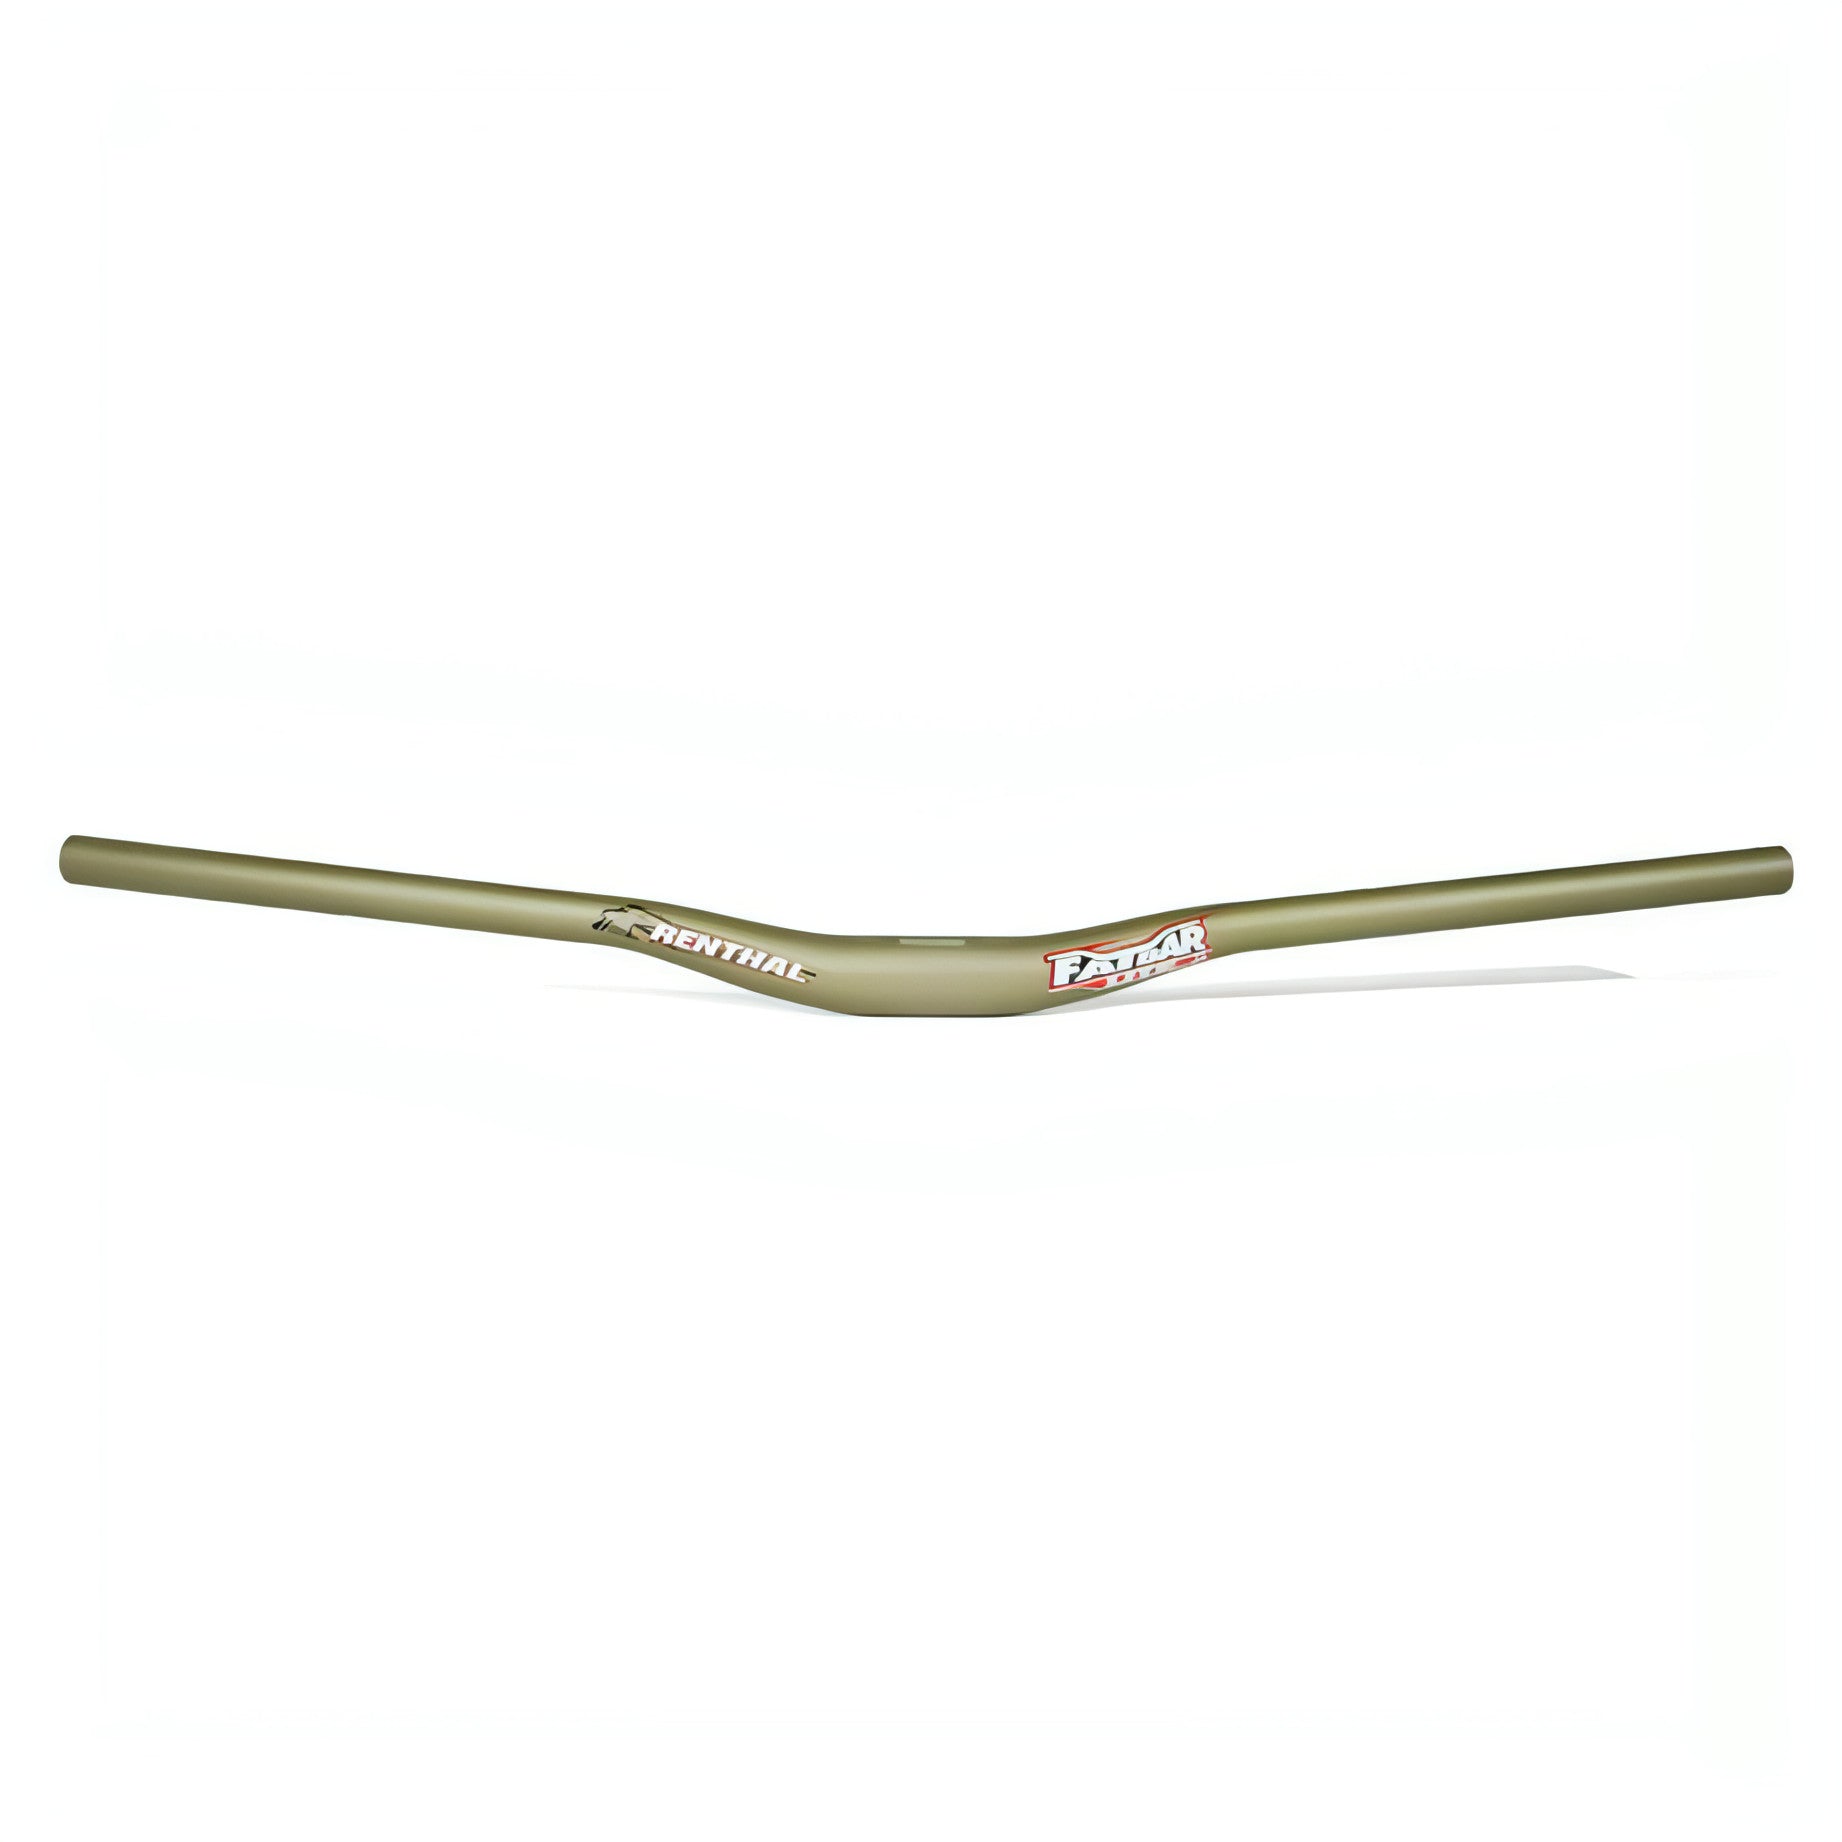 Renthal Fatbar Lite 35 MTB Riser Bar - Gold 5026190153109 - Start Fitness